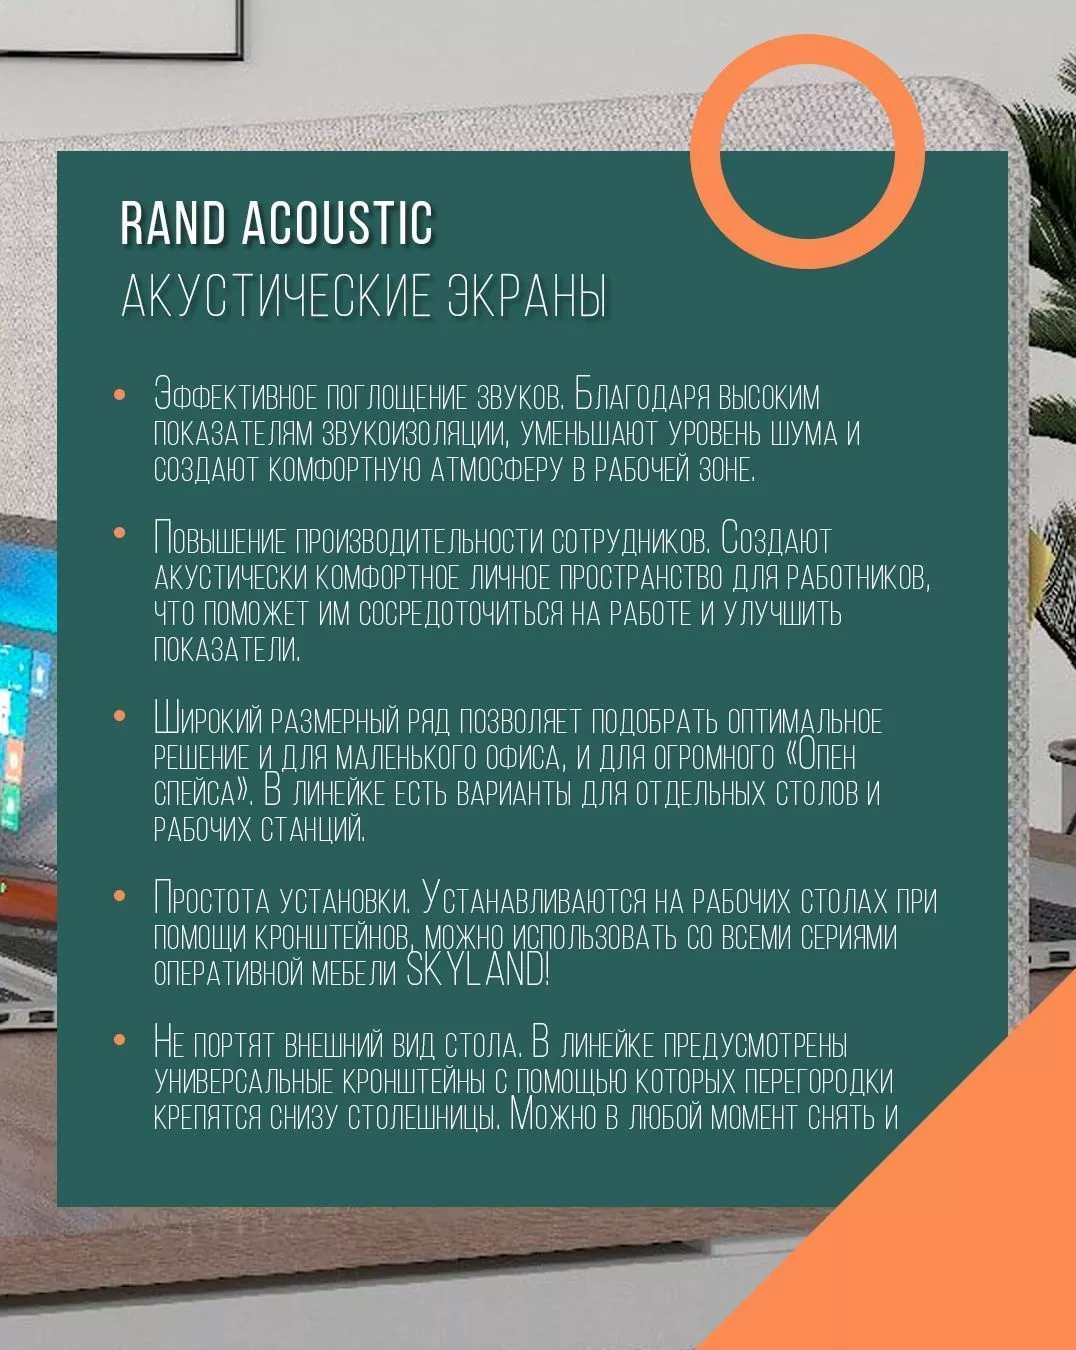 Акустические экраны Rand Acoustic Skyland